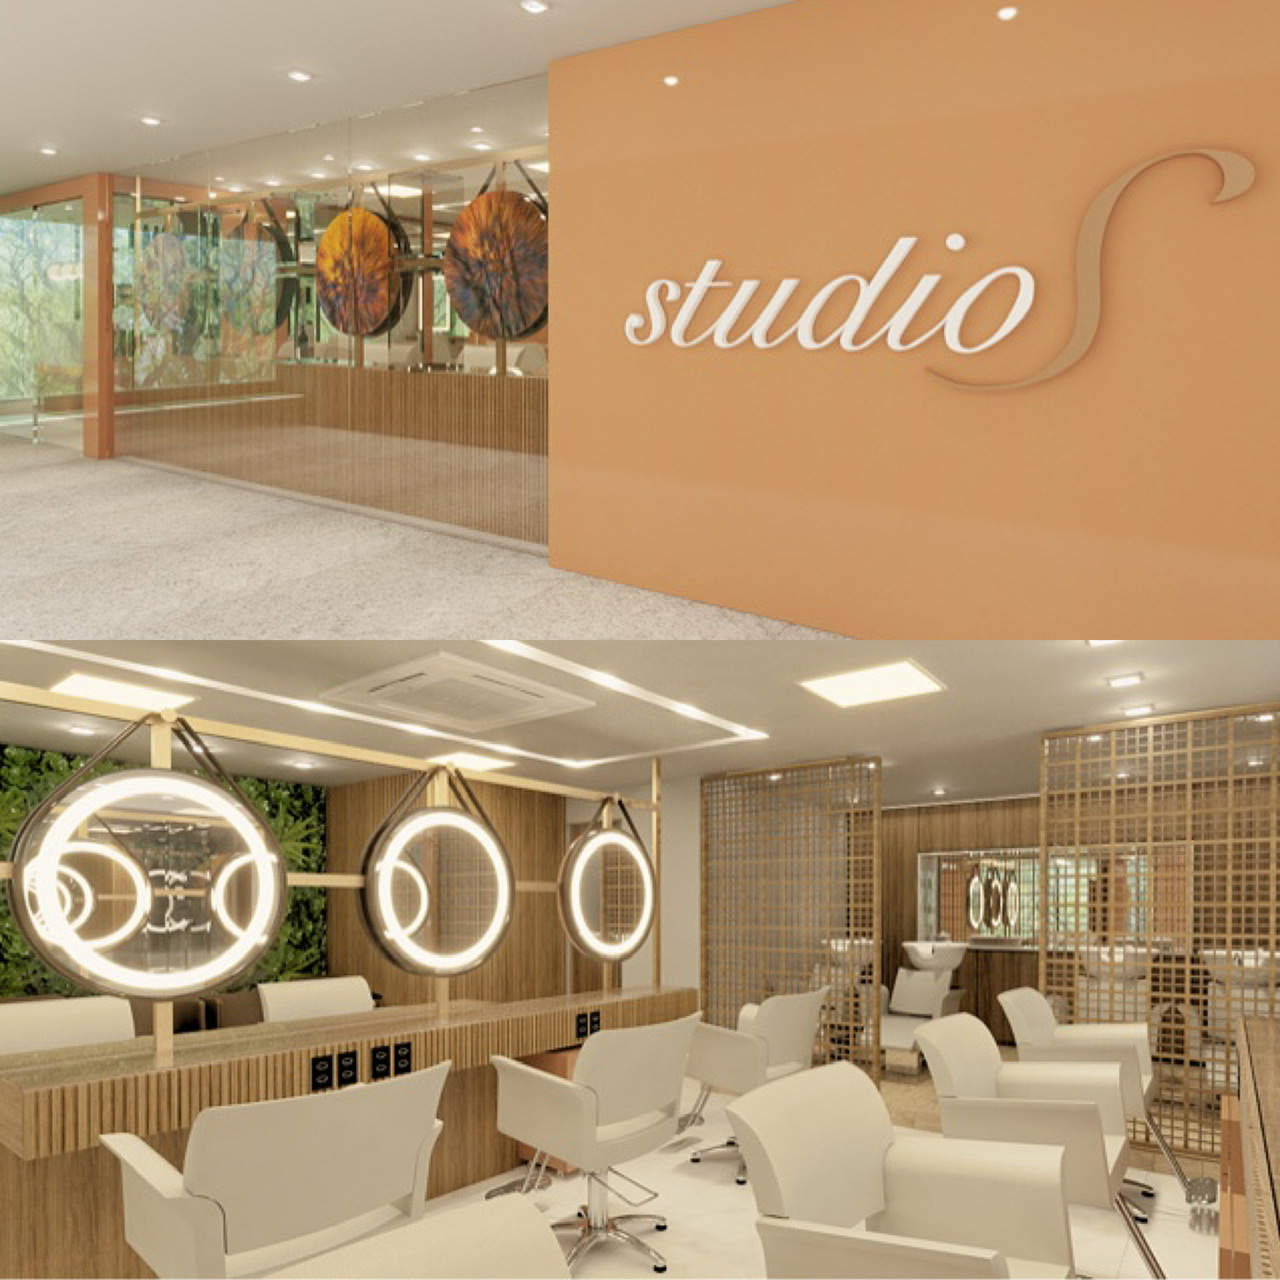  Com projeto de Aline Cangussú, espaço de beleza Studio S ganha unidade no Corredor da Vitória 